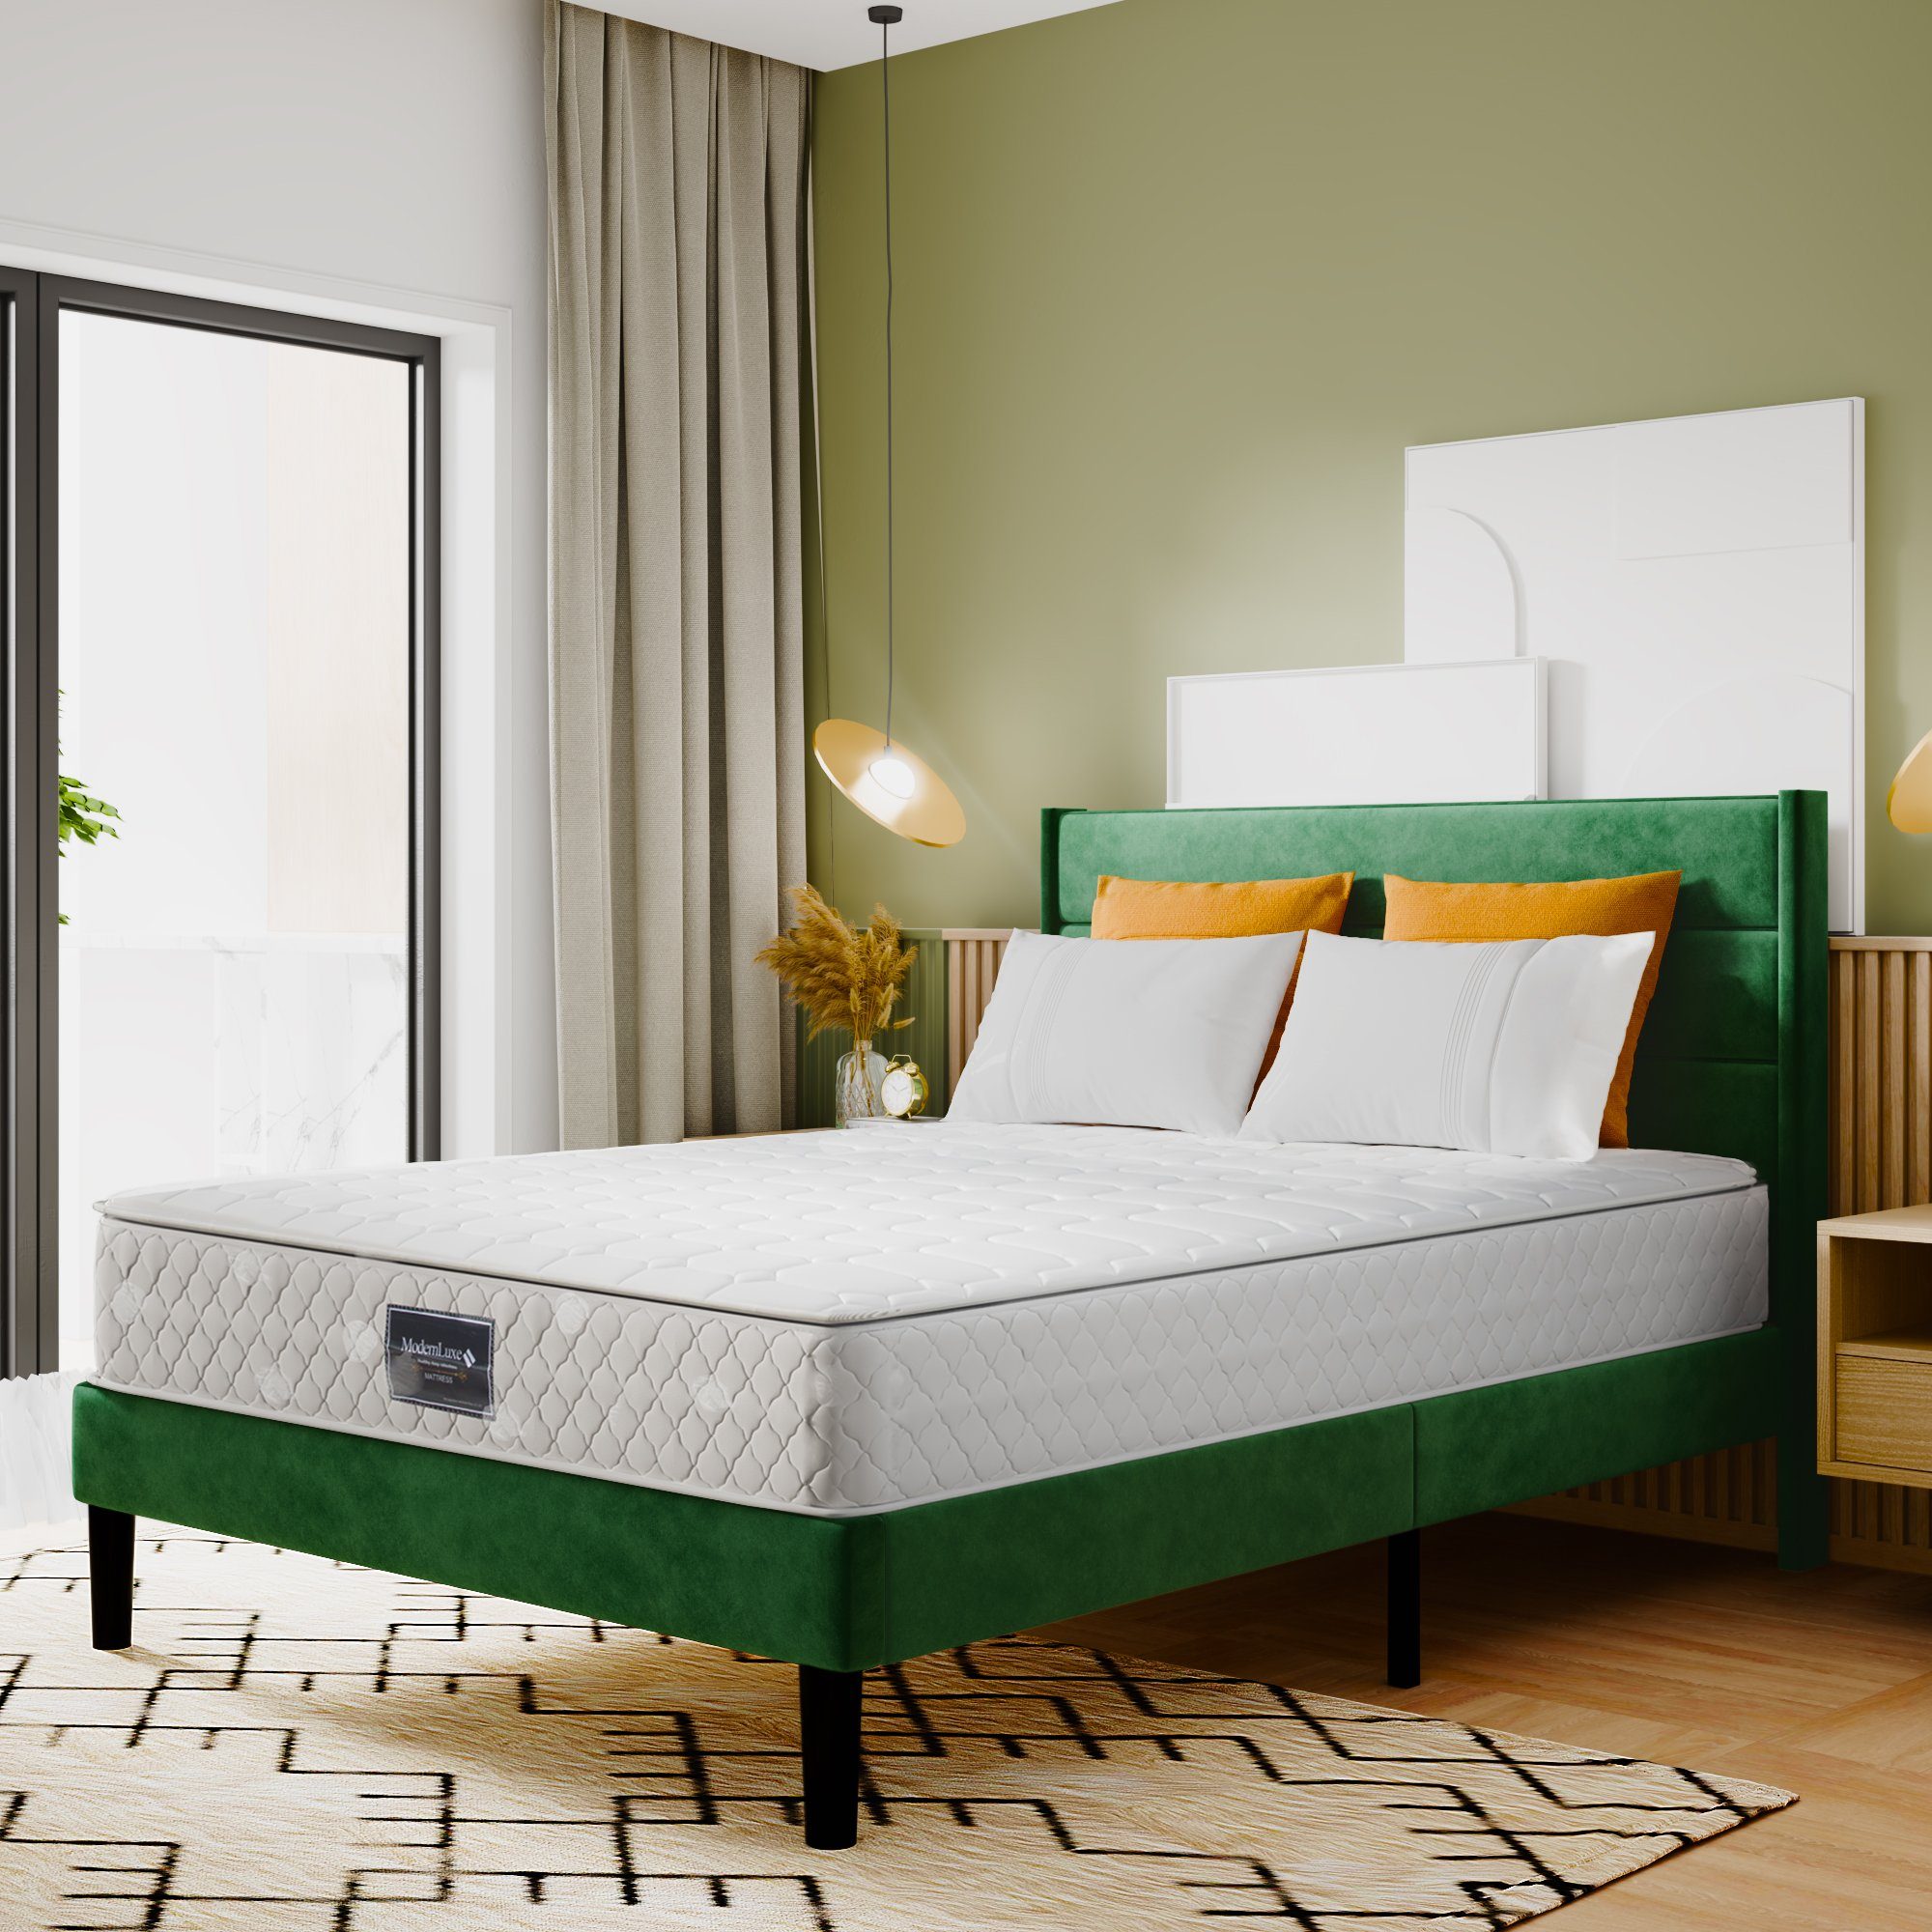 SOFTWEARY Polsterbett (Doppelbett mit Taschenfederkernmatratze, 140x200 cm, Bettbezug aus Samt), 25 cm hoch, 7 Zonen, Härtegrad 3, 620 Federn grün